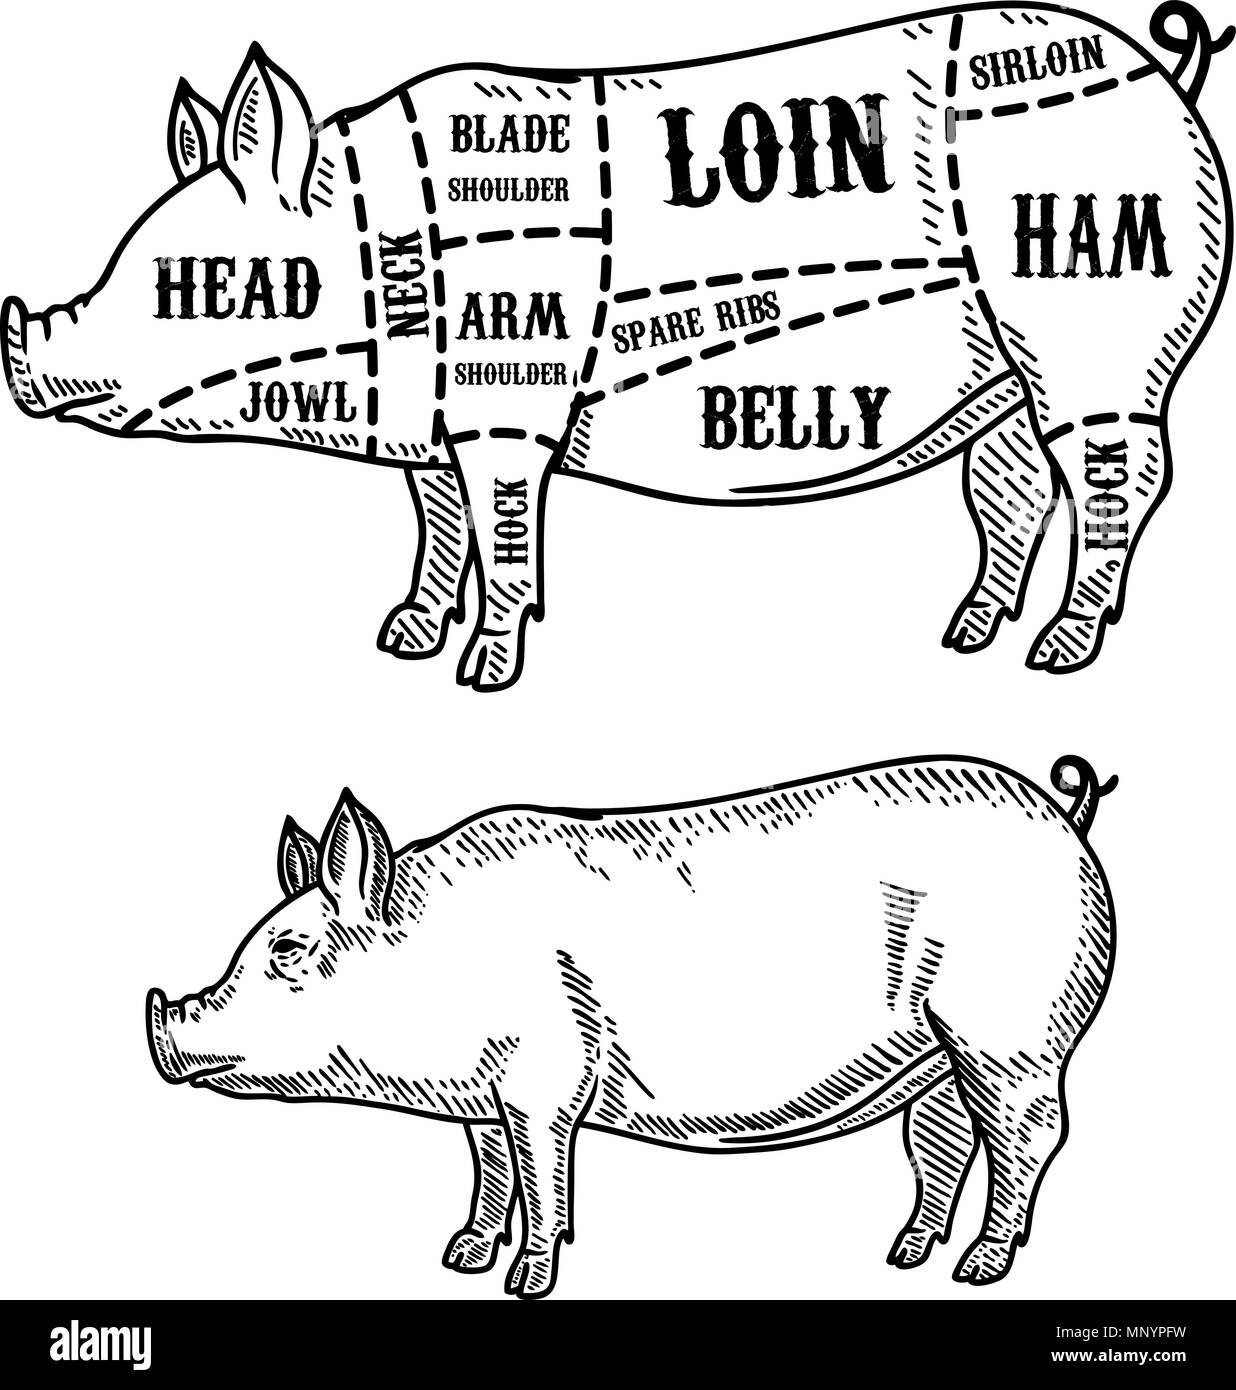 Maiale schema di macellaio. I tagli di carne di maiale. Elemento di design per poster, scheda, emblema distintivo. Immagine vettoriale Illustrazione Vettoriale